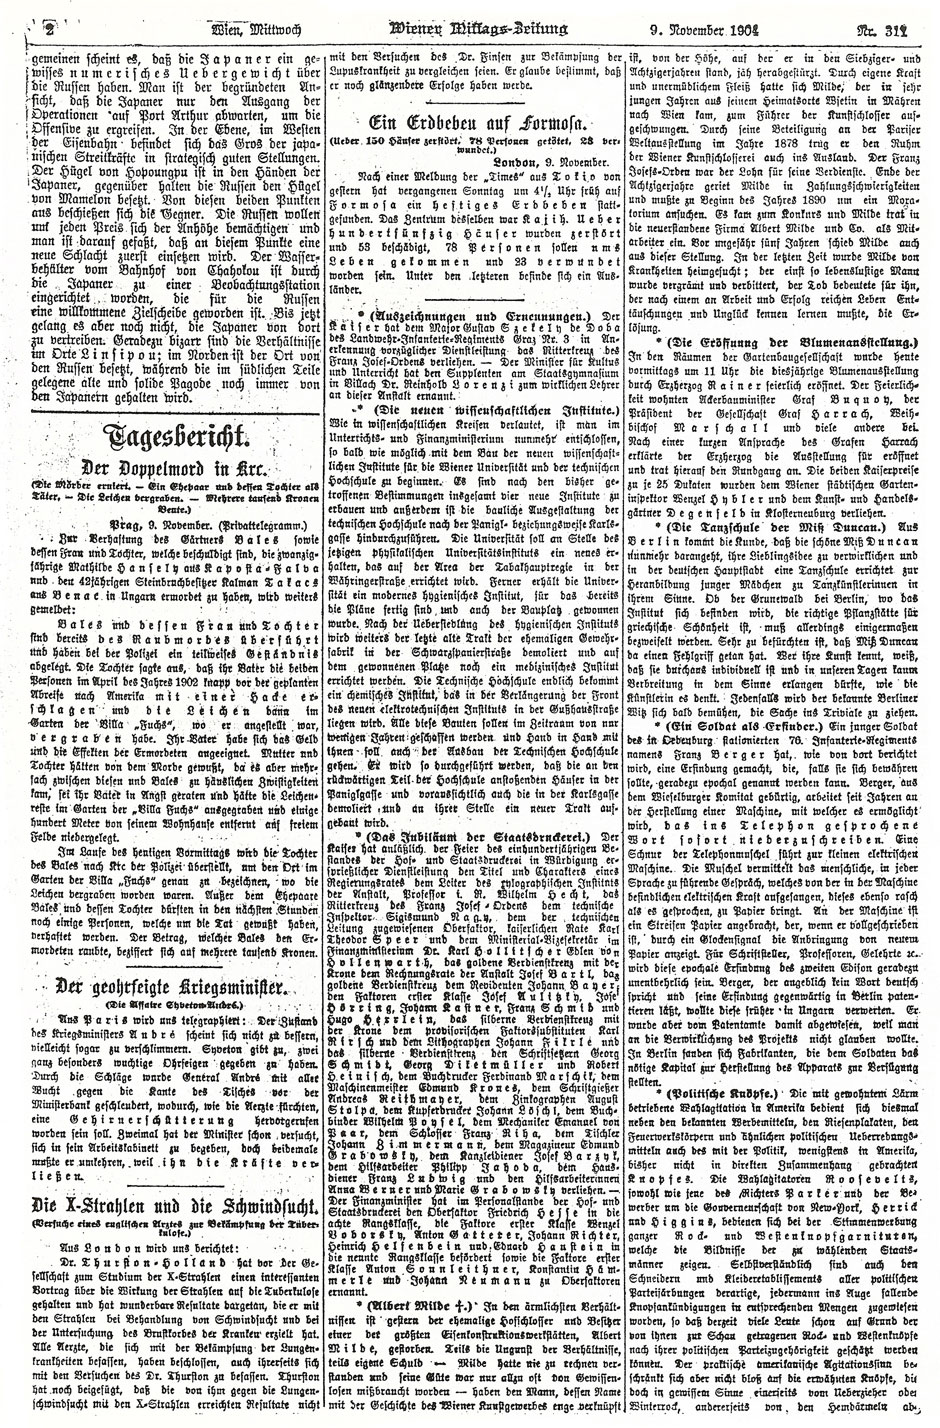 Wiener Mittags-Zeitung, 9. November 1904; Folgeseite